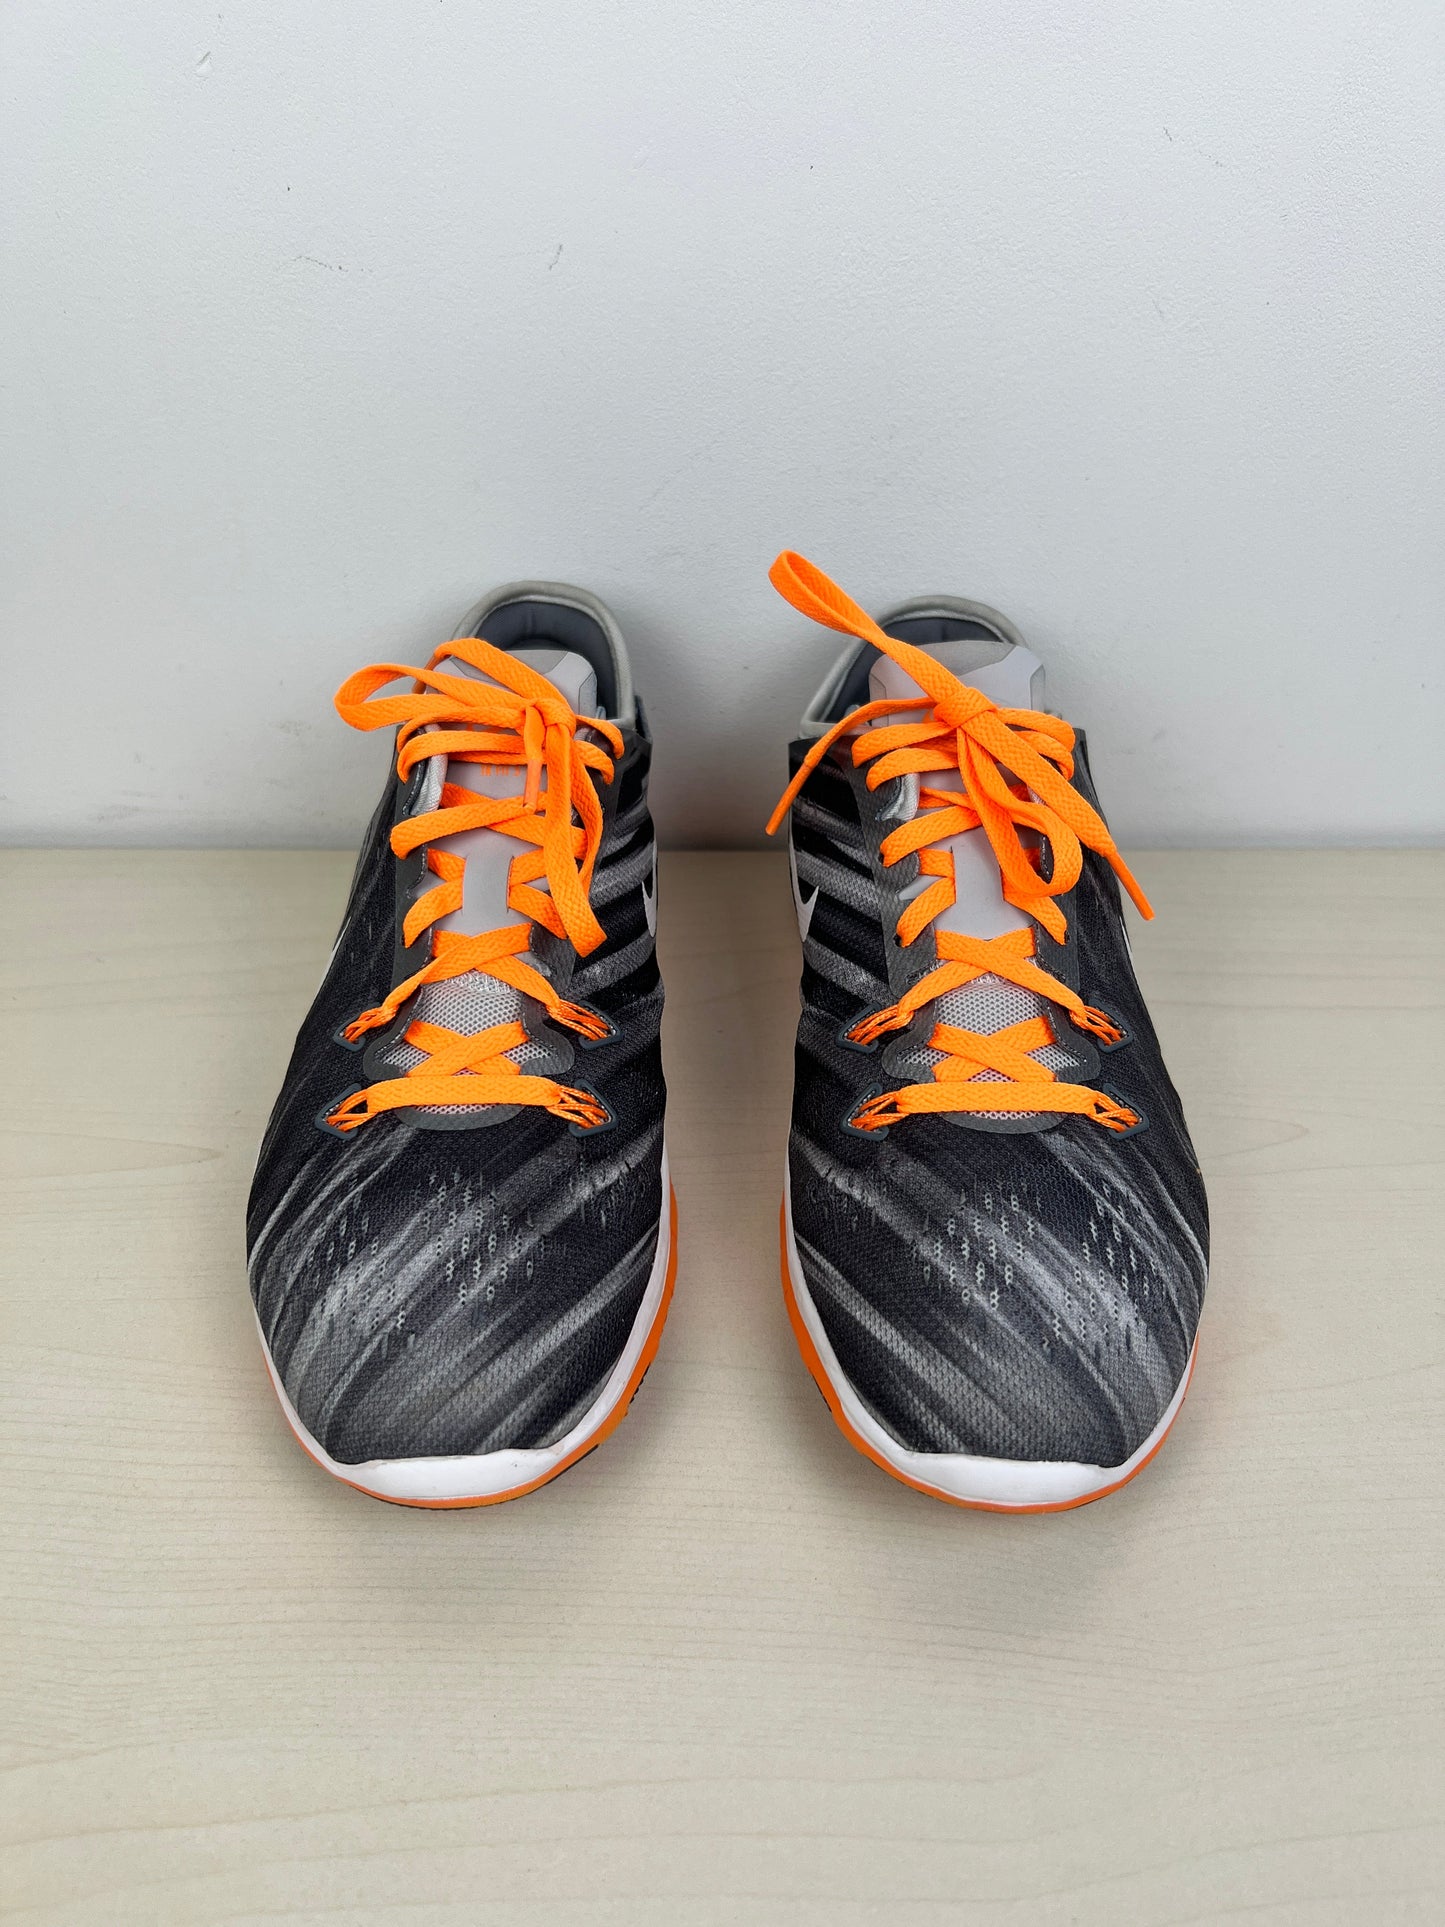 Grey & Orange Shoes Athletic Nike, Size 6.5